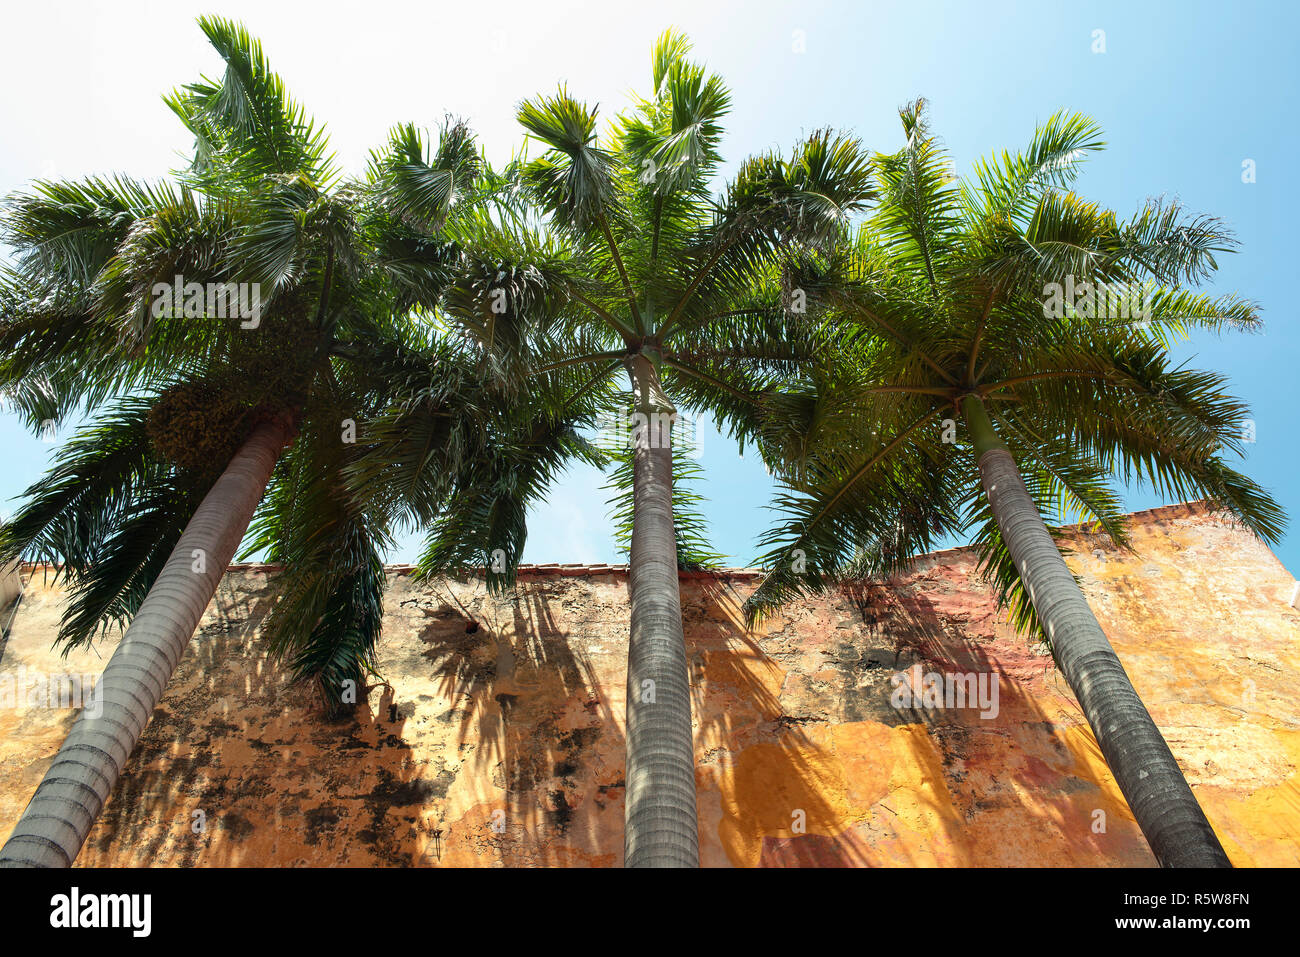 Árboles de palma real desde abajo contra la pared rústica. Arquitectura colonial con detalles tropicales en el casco antiguo de la ciudad de Cartagena de Indias, Colombia. 2018 Foto de stock